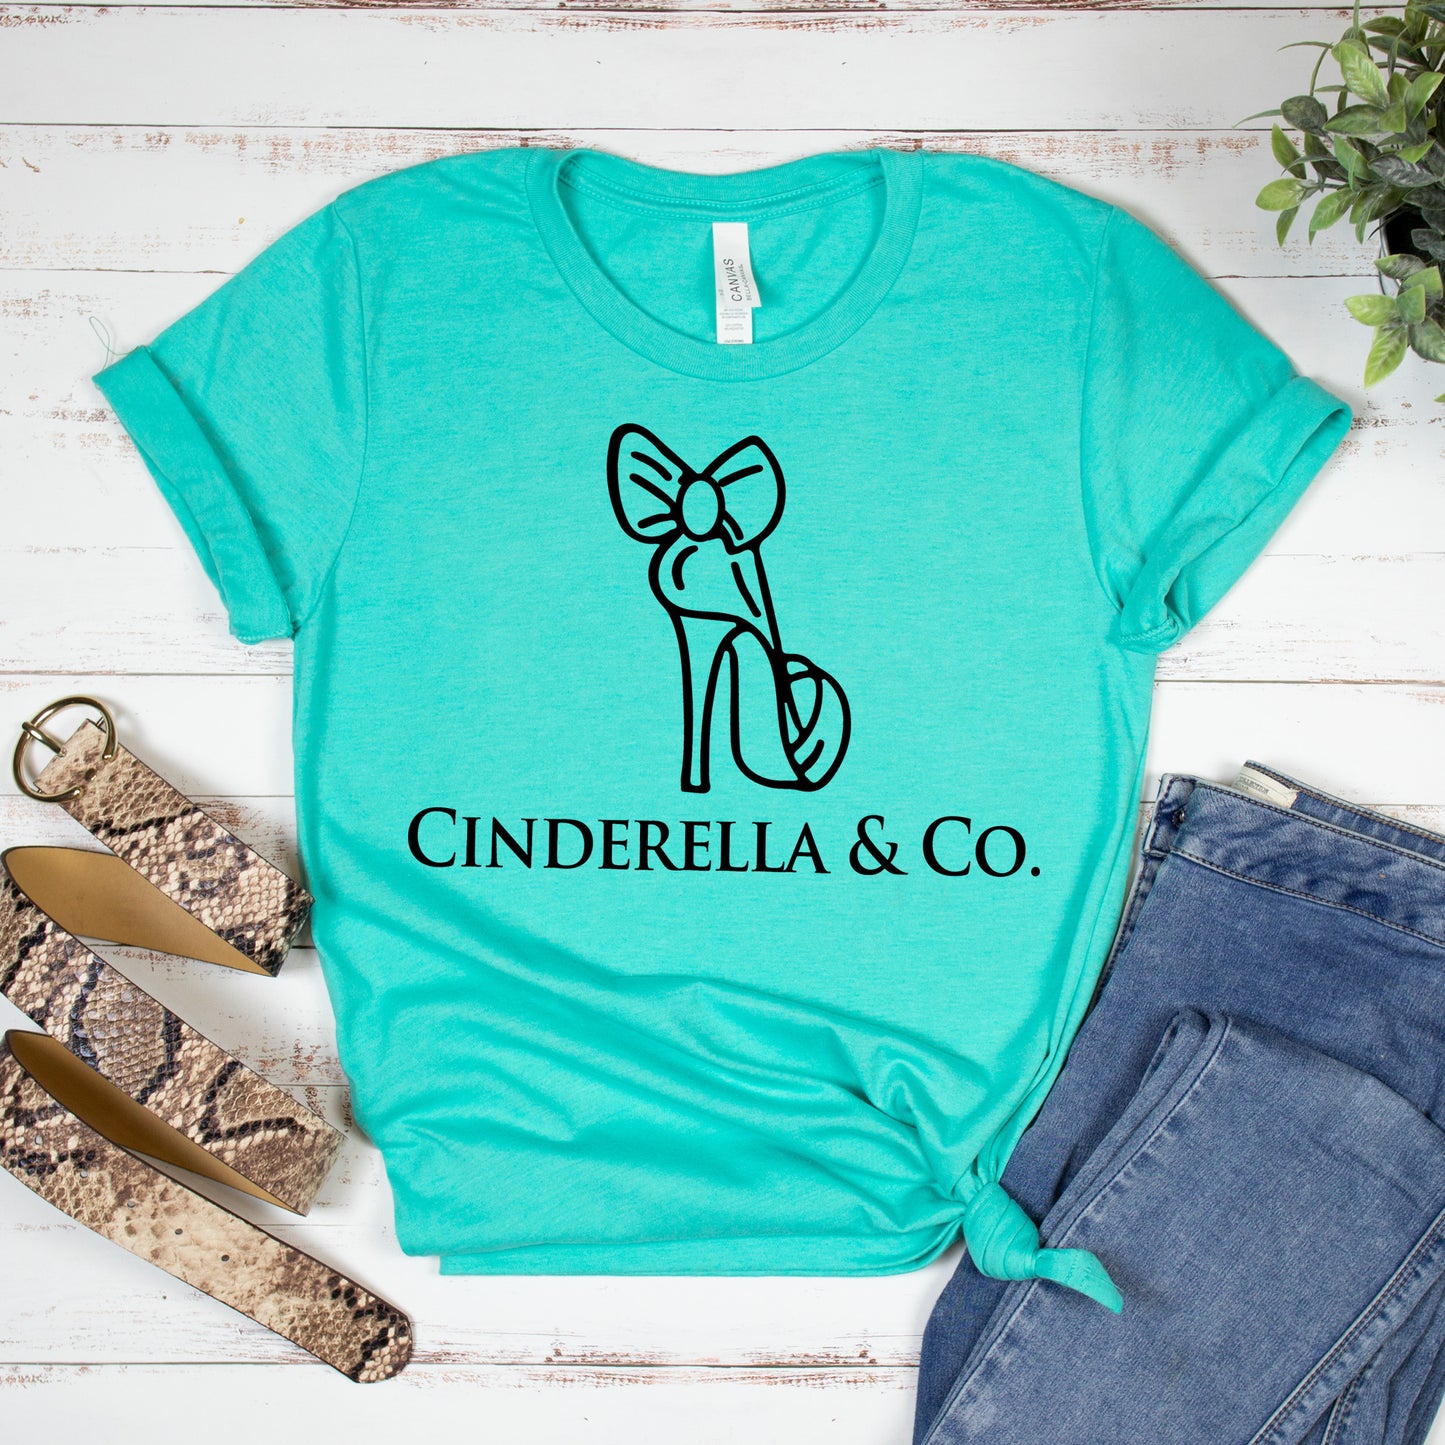 Cinderella & Co.- Single Color (black)- 11.5" wide Plastisol Screen Print Transfer